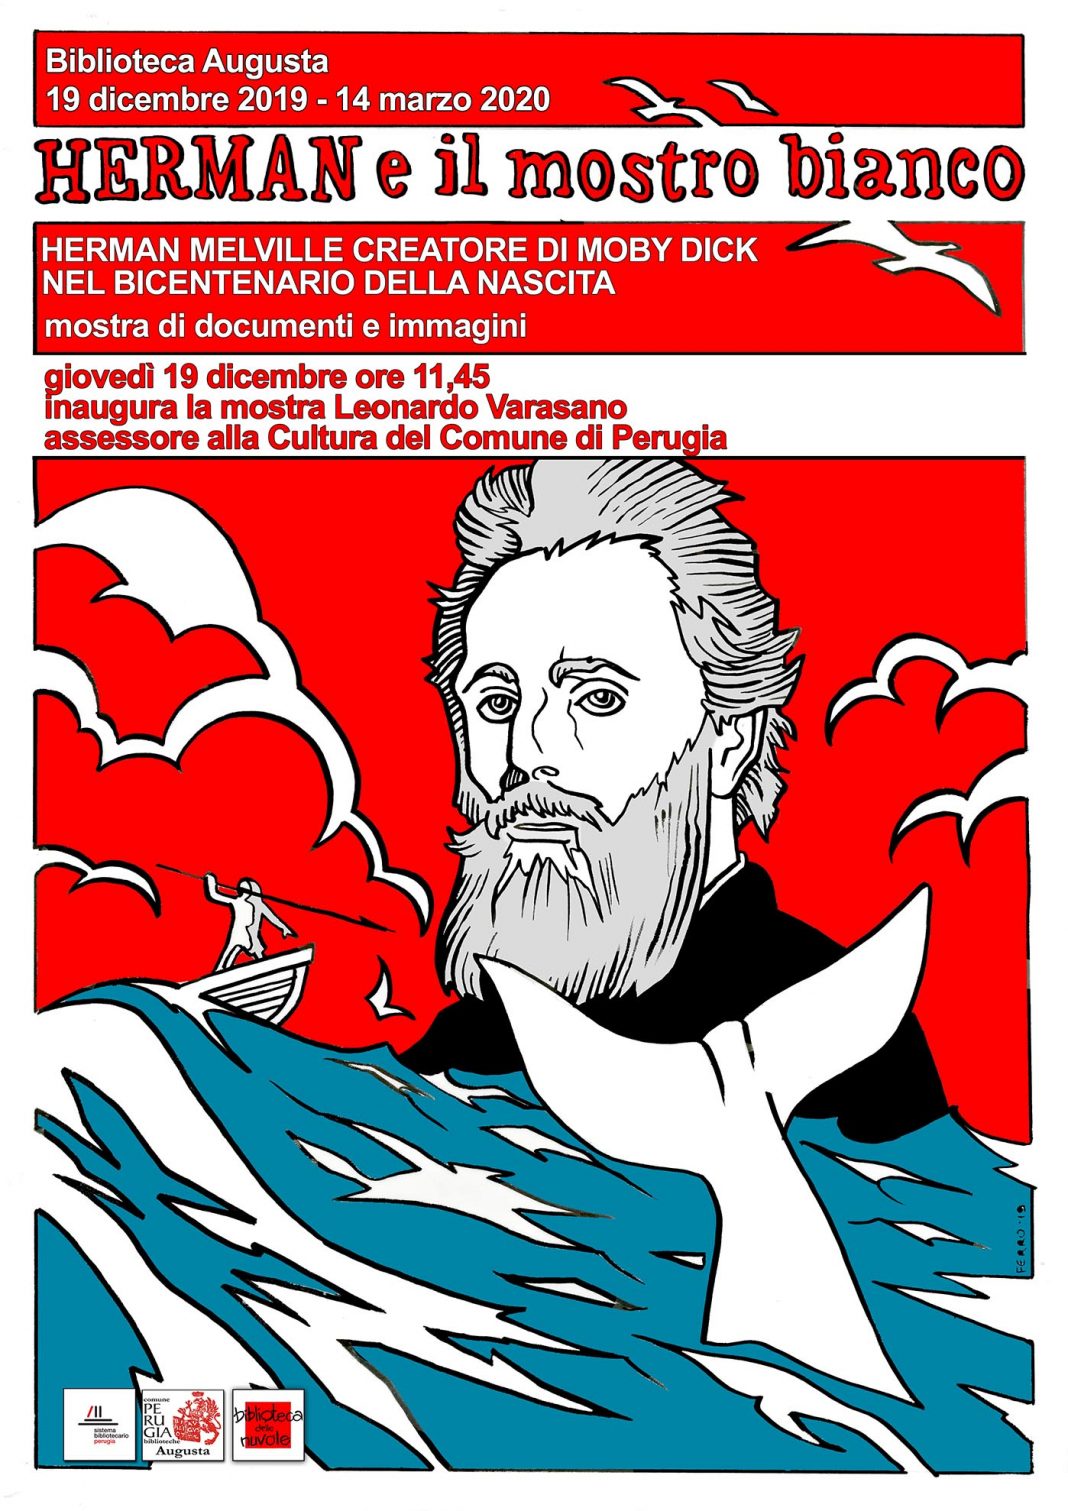 Herman e il mostro bianco. Herman Melville creatore di Moby Dick nel bicentenario della nascitahttps://www.exibart.com/repository/media/formidable/11/Locandina-mostra-inaug-1068x1511.jpg